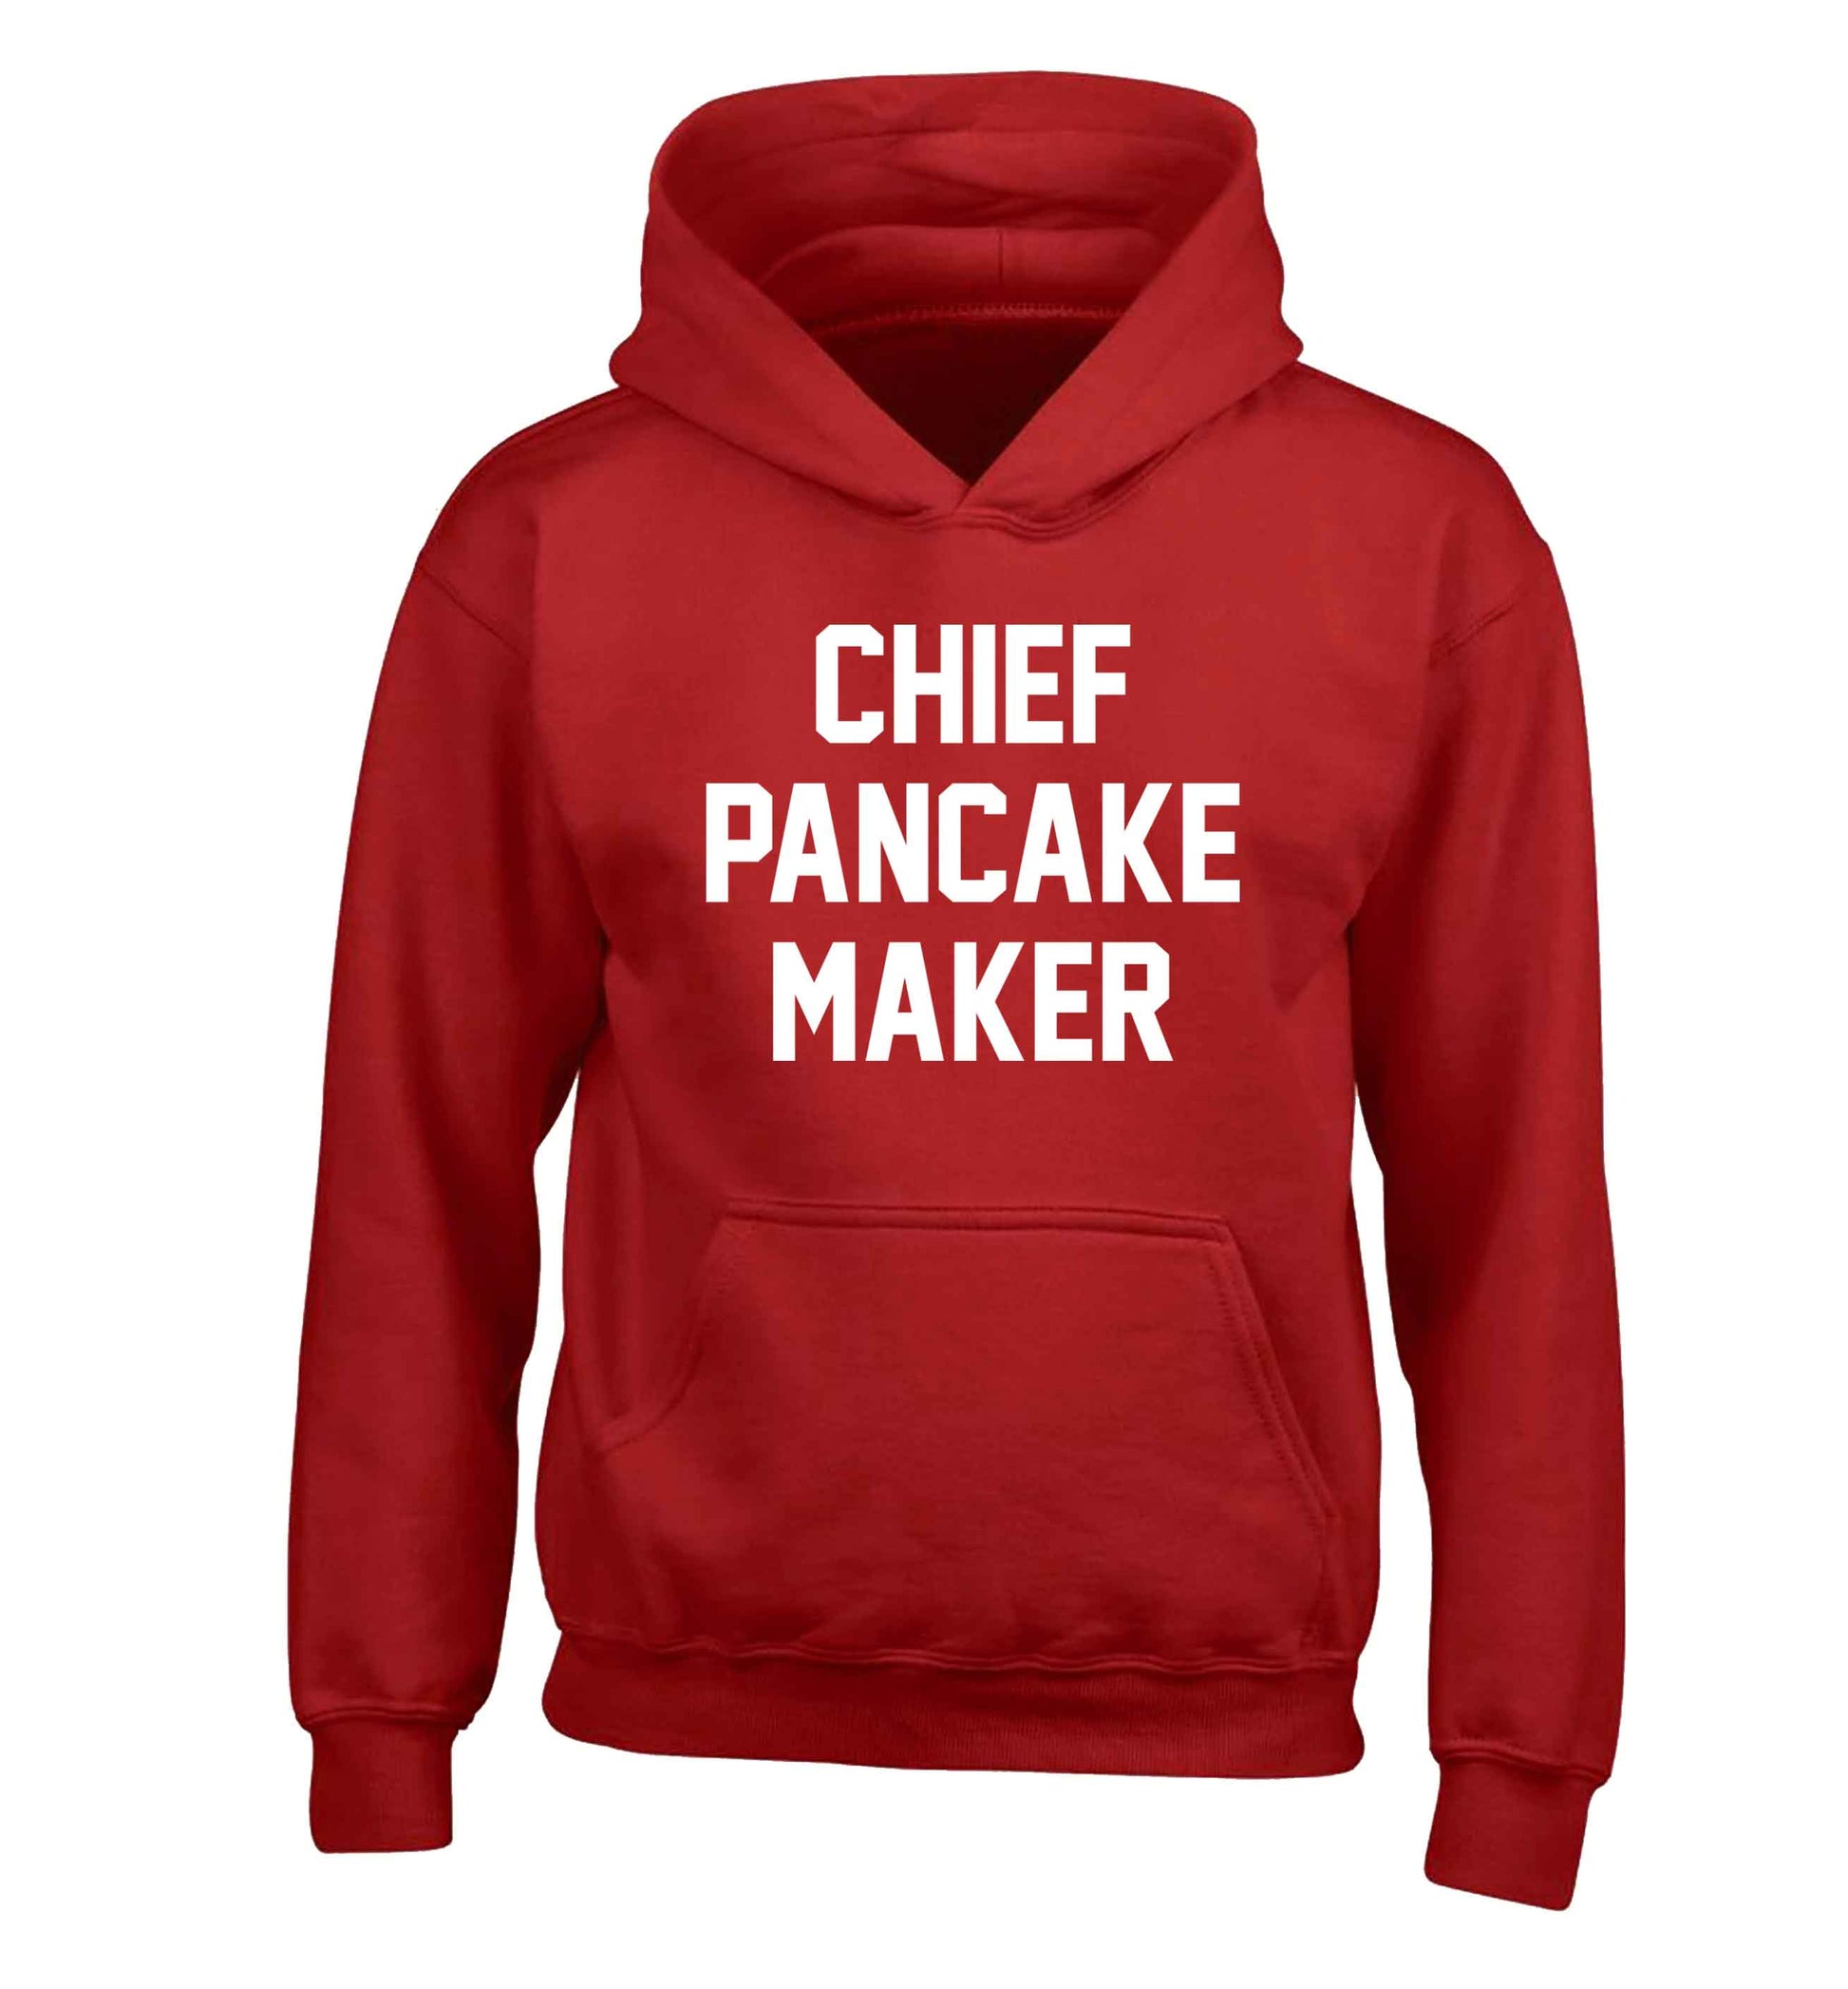 Chief pancake maker children's red hoodie 12-13 Years